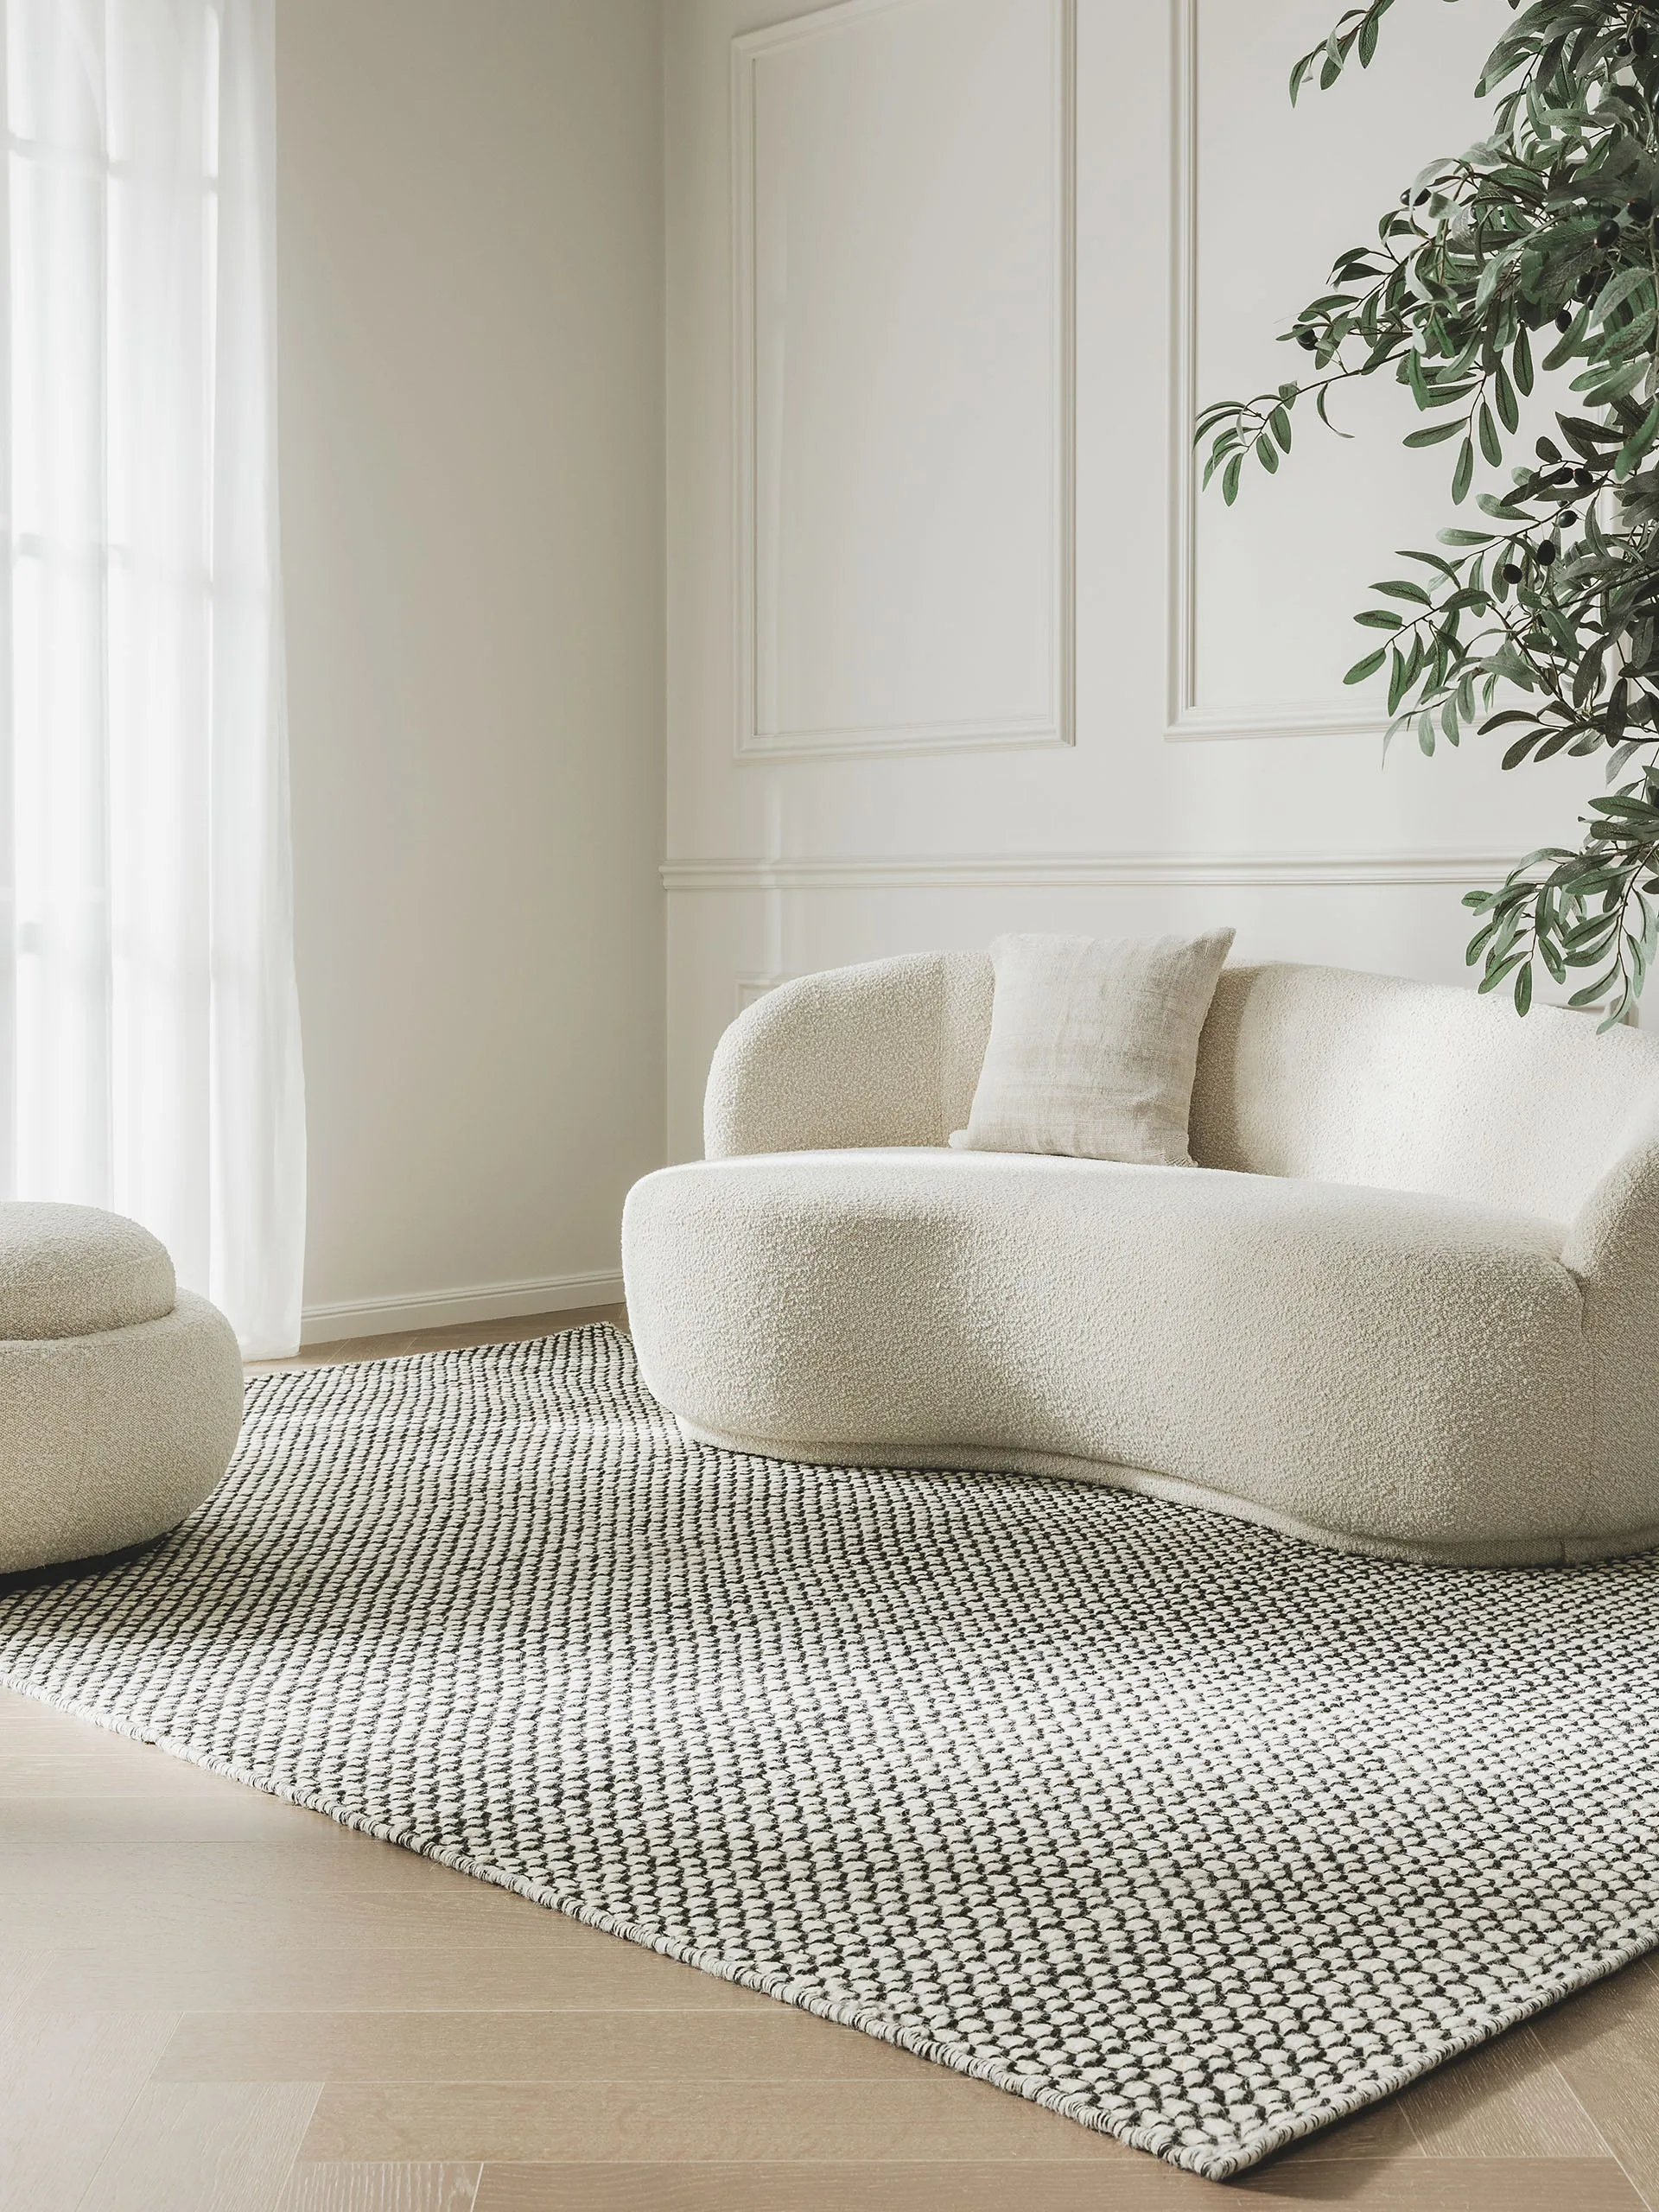 Helles und luxuriös eingerichtetes Wohnzimmer mit Sofa in organischer Form und schwarz-weißem Teppich aus Wolle, der geeignet für Allergiker ist